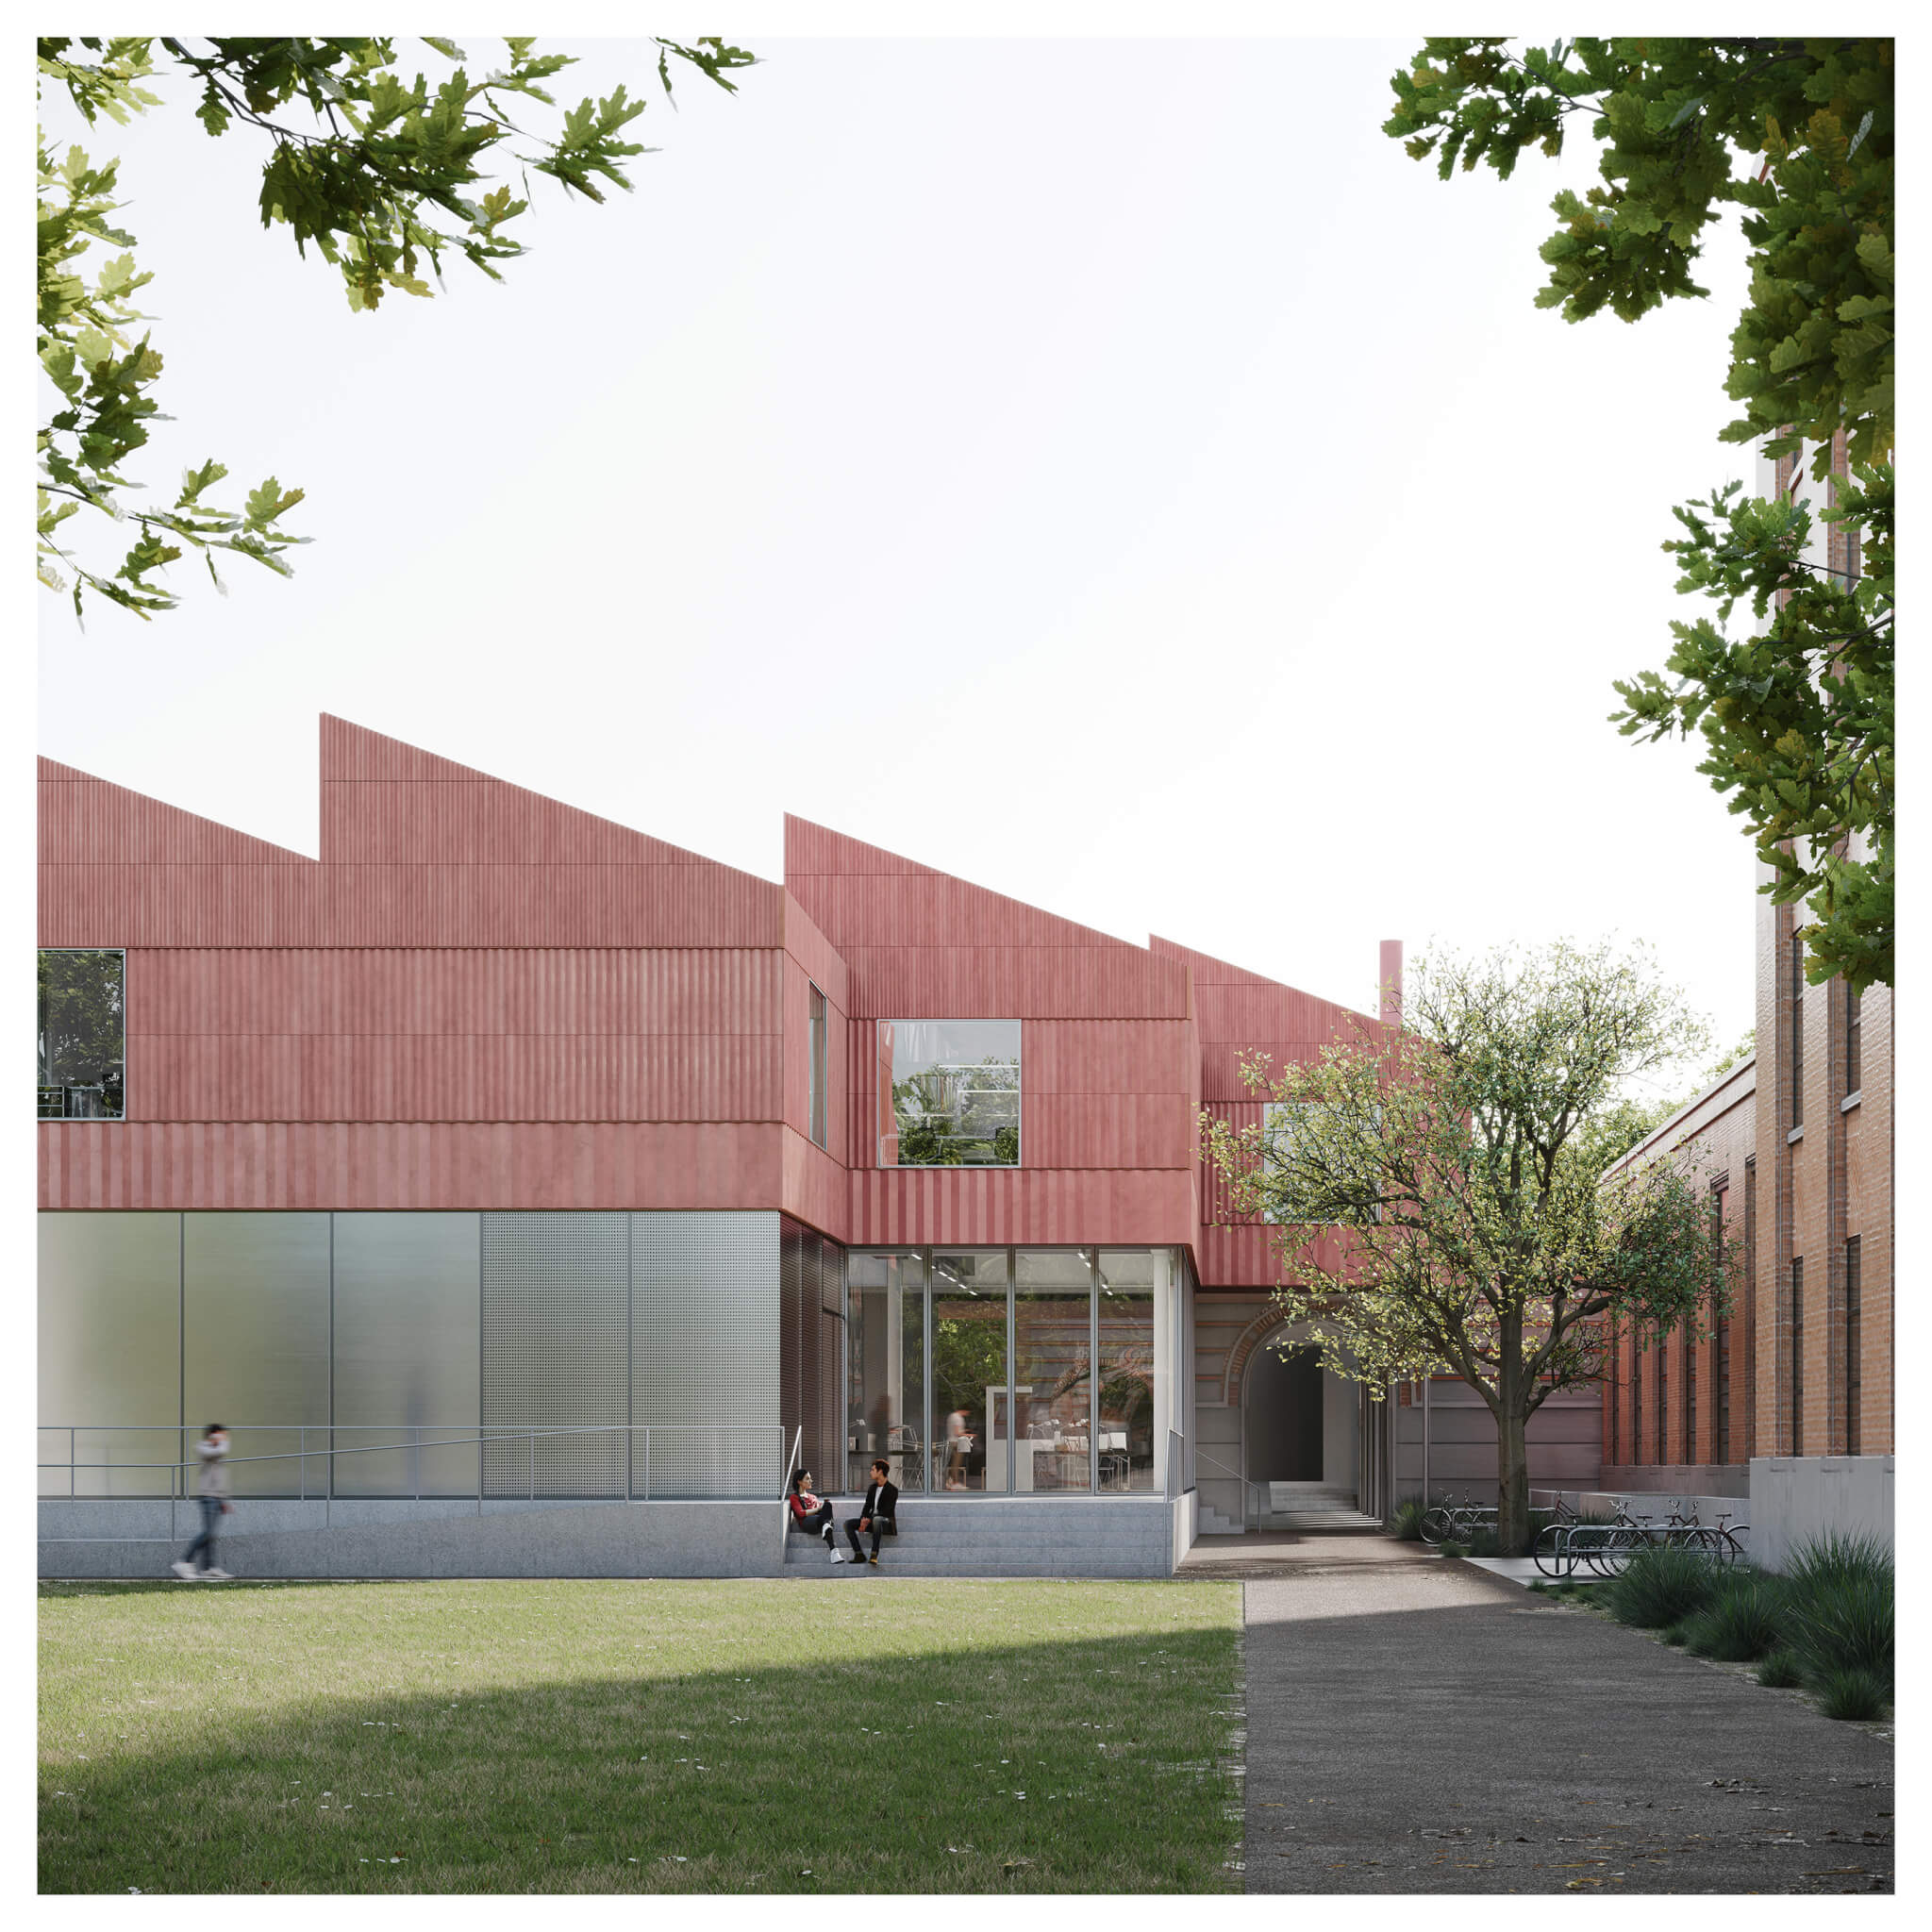 莱斯大学(Rice University)砖房的扩建部分，由赤陶土覆盖